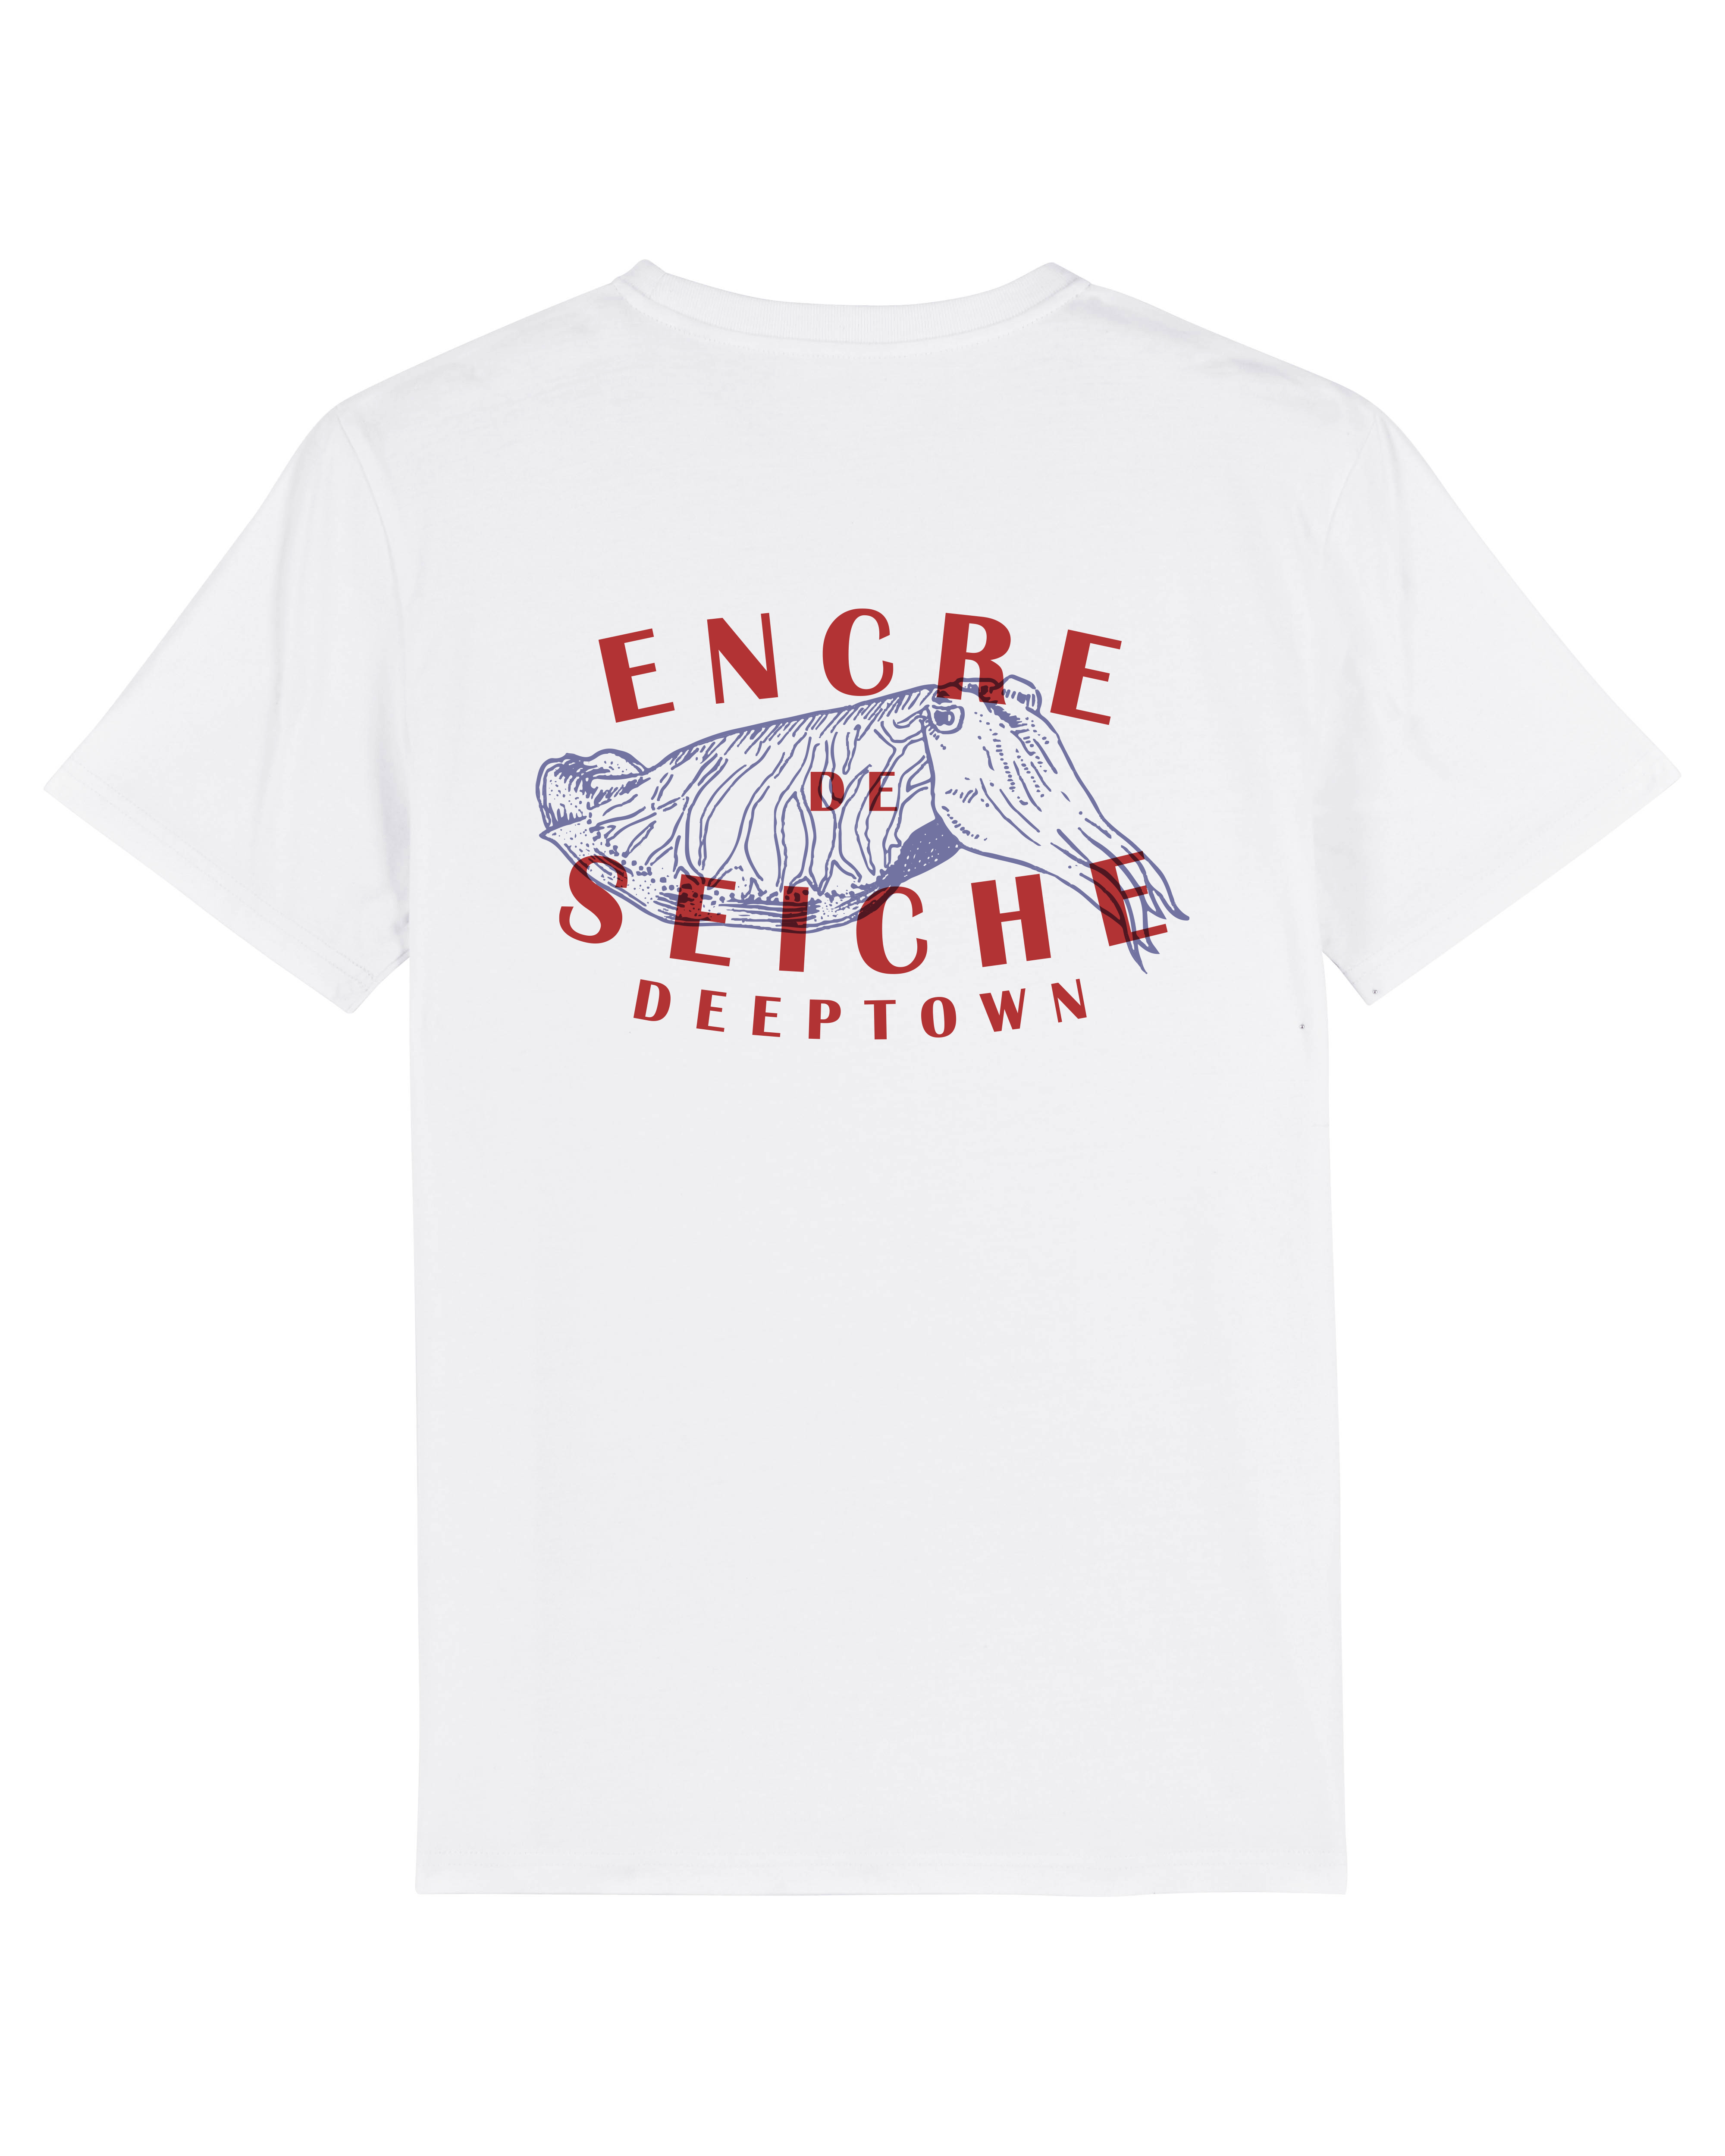 T-Shirt Encre de Seiche